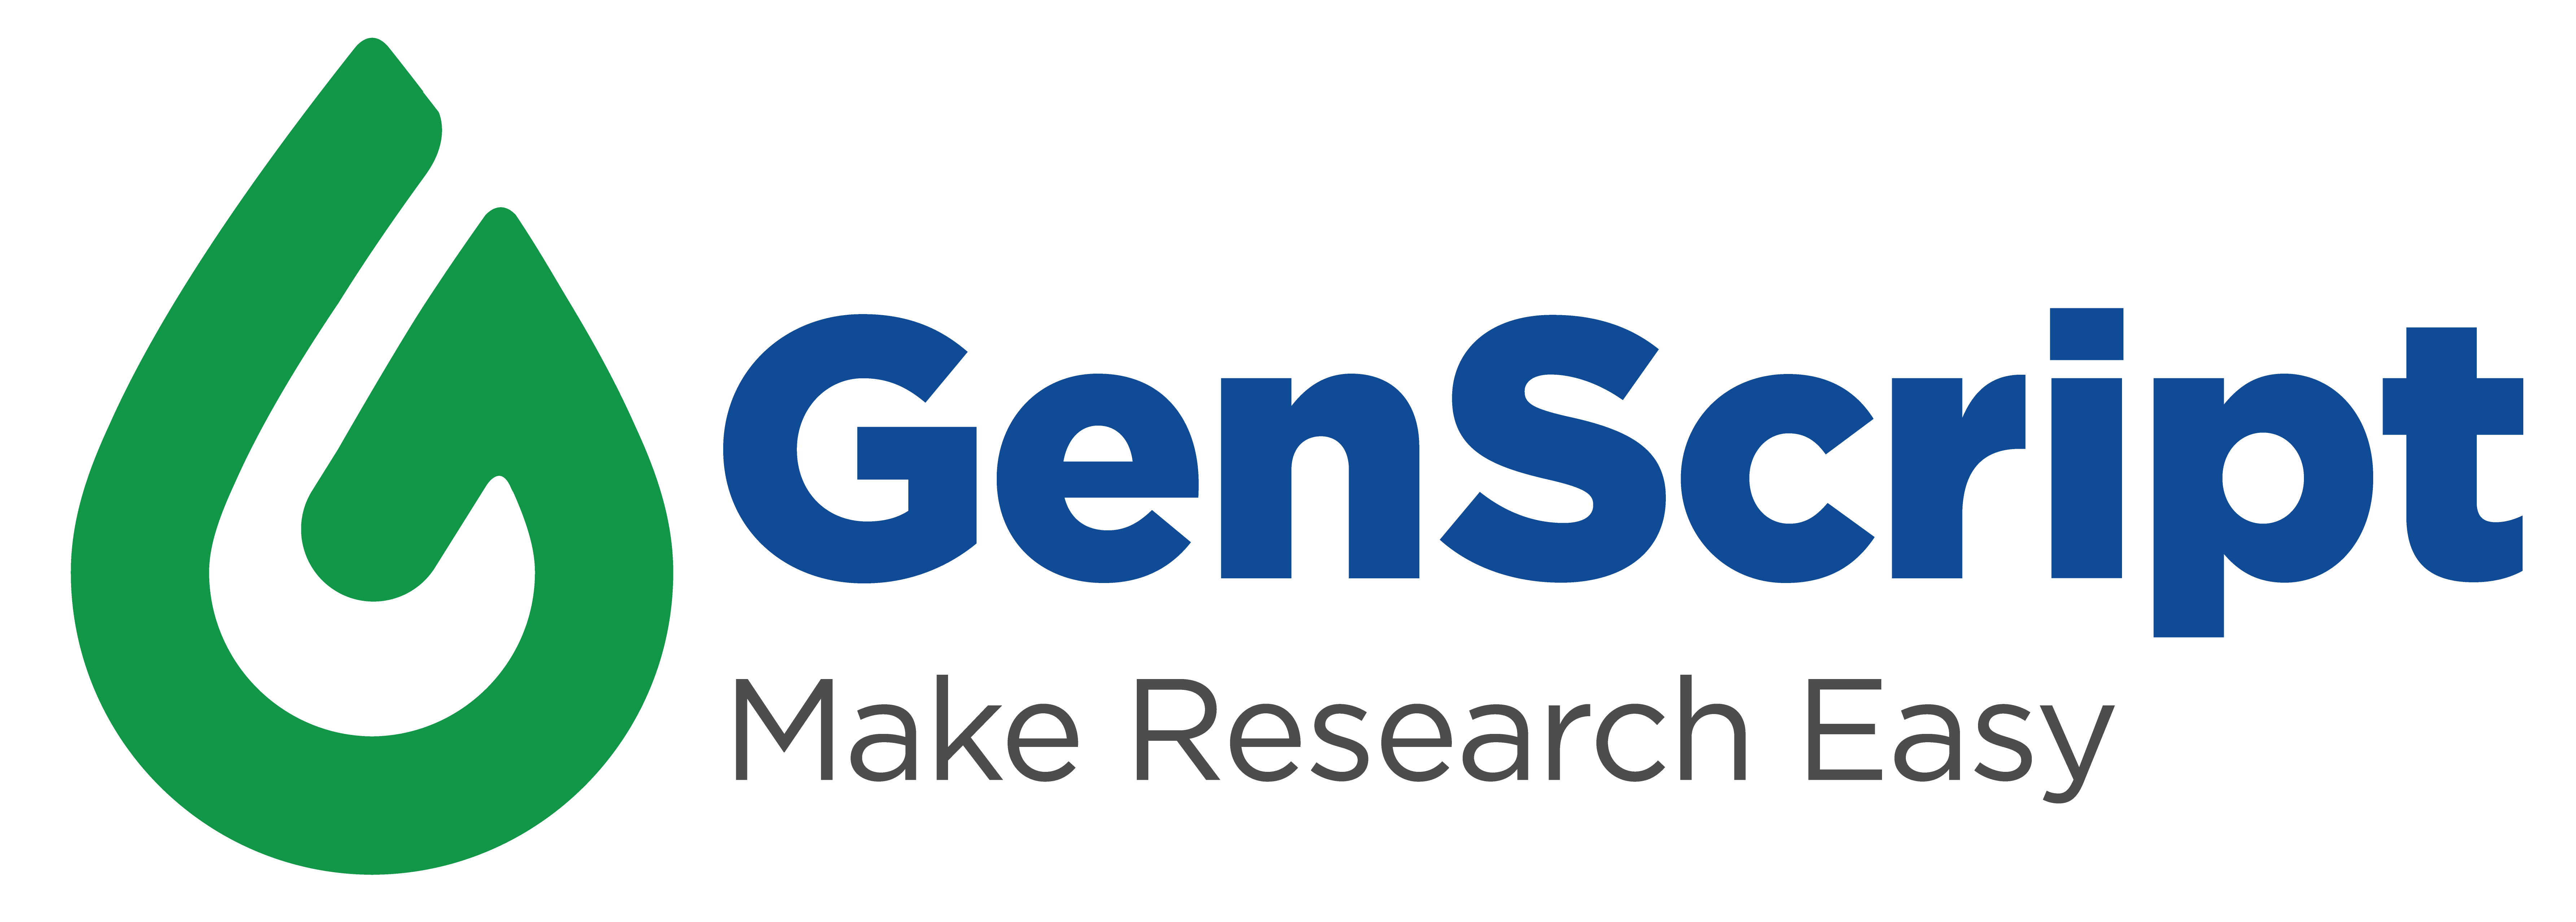 Genscript Logo Transparent